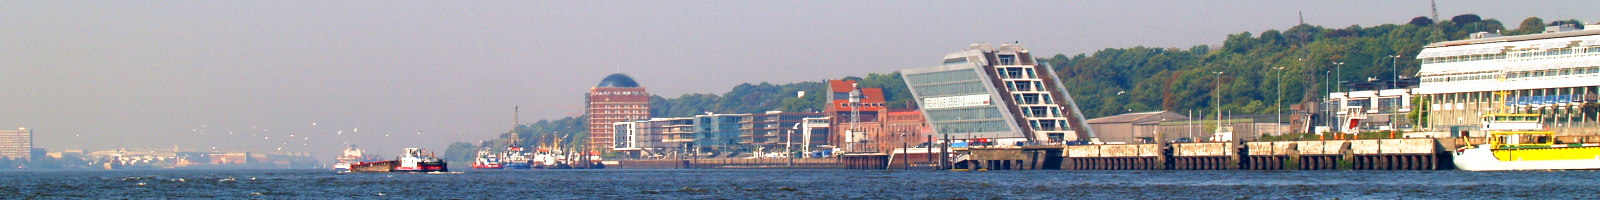 Hamburg Hafen Landungsbruecken